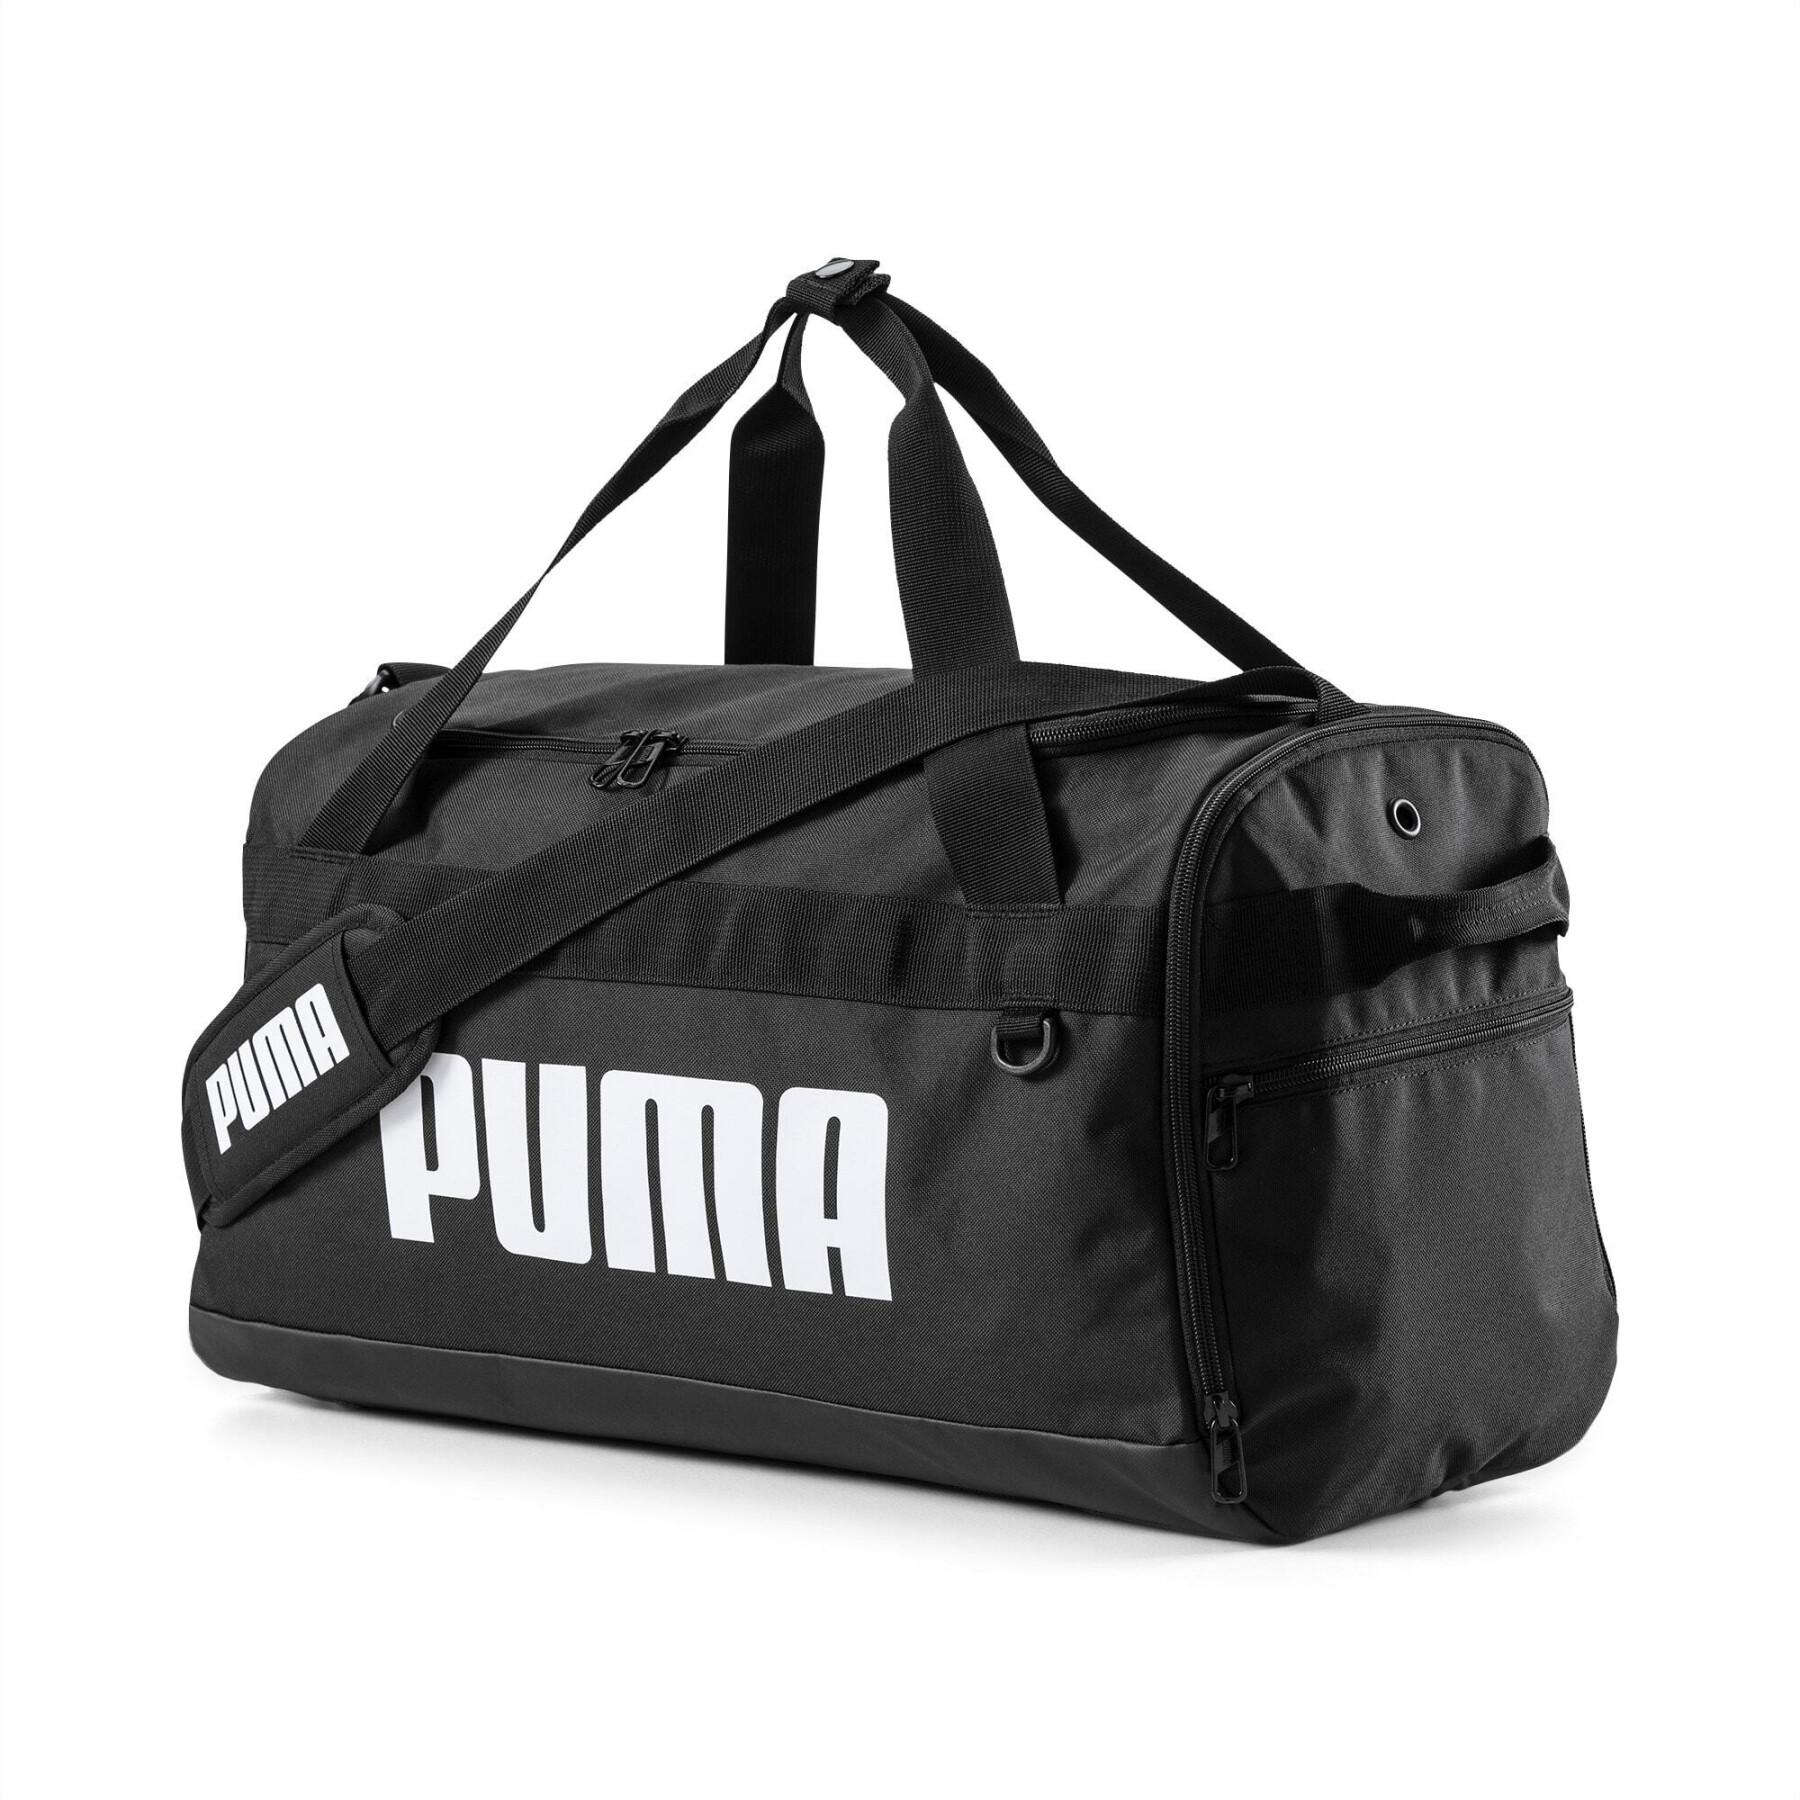 Bolsa de deporte Puma Challenger